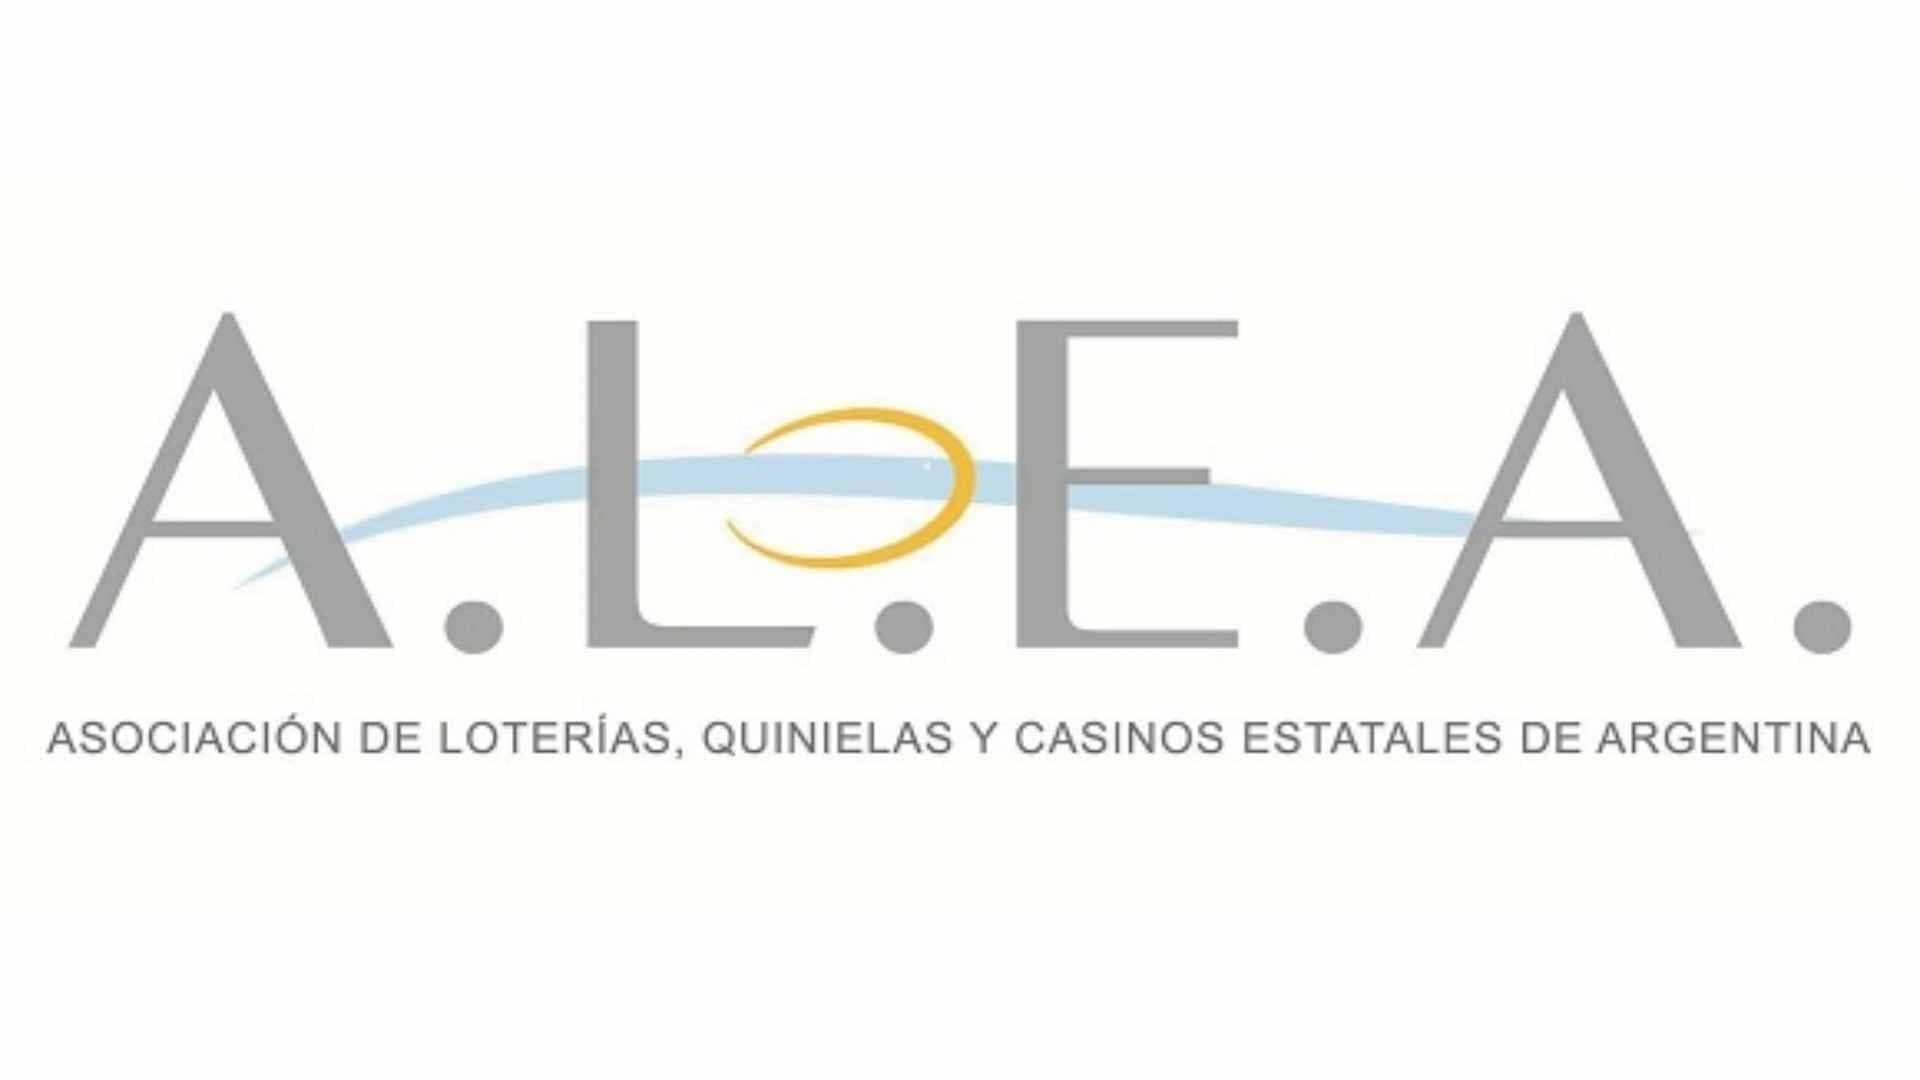 Ontem foi realizada na Argentina a conferência sobre comunicação organizada pela IAFAS e ALEA. As organizações de loteria realizaram um dia de treinamento orientando à comunicação.